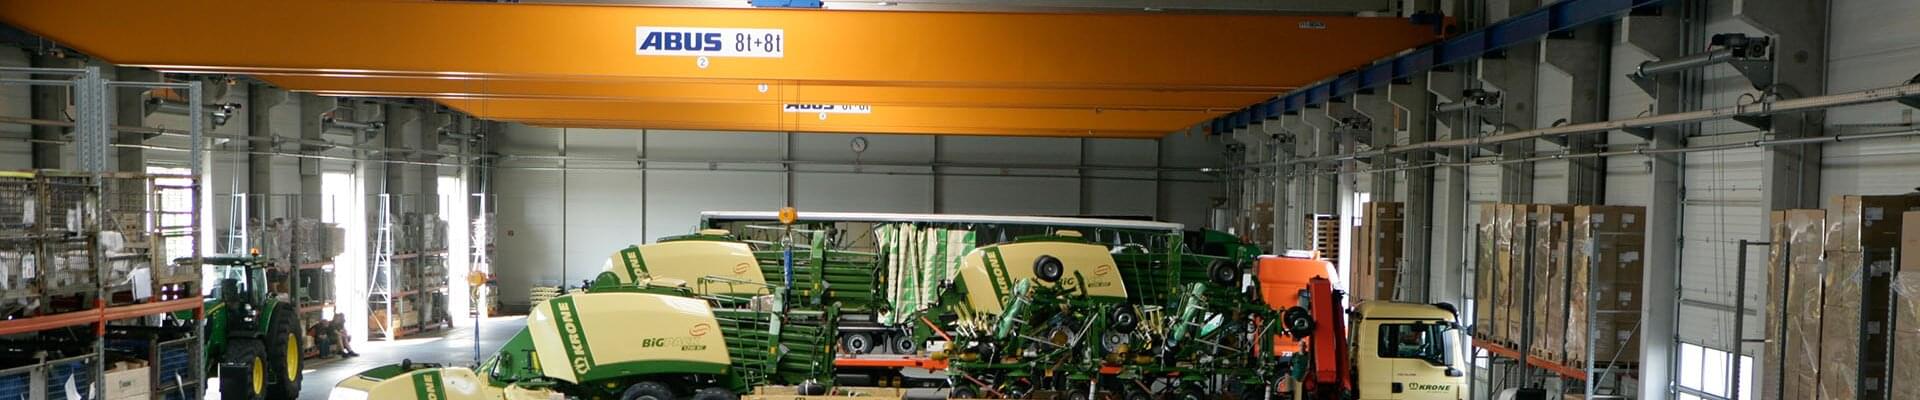 Kran med en lastkapacitet på 8 ton och 8 ton i produktionshallen för lantbruksmaskinteknik i Tyskland